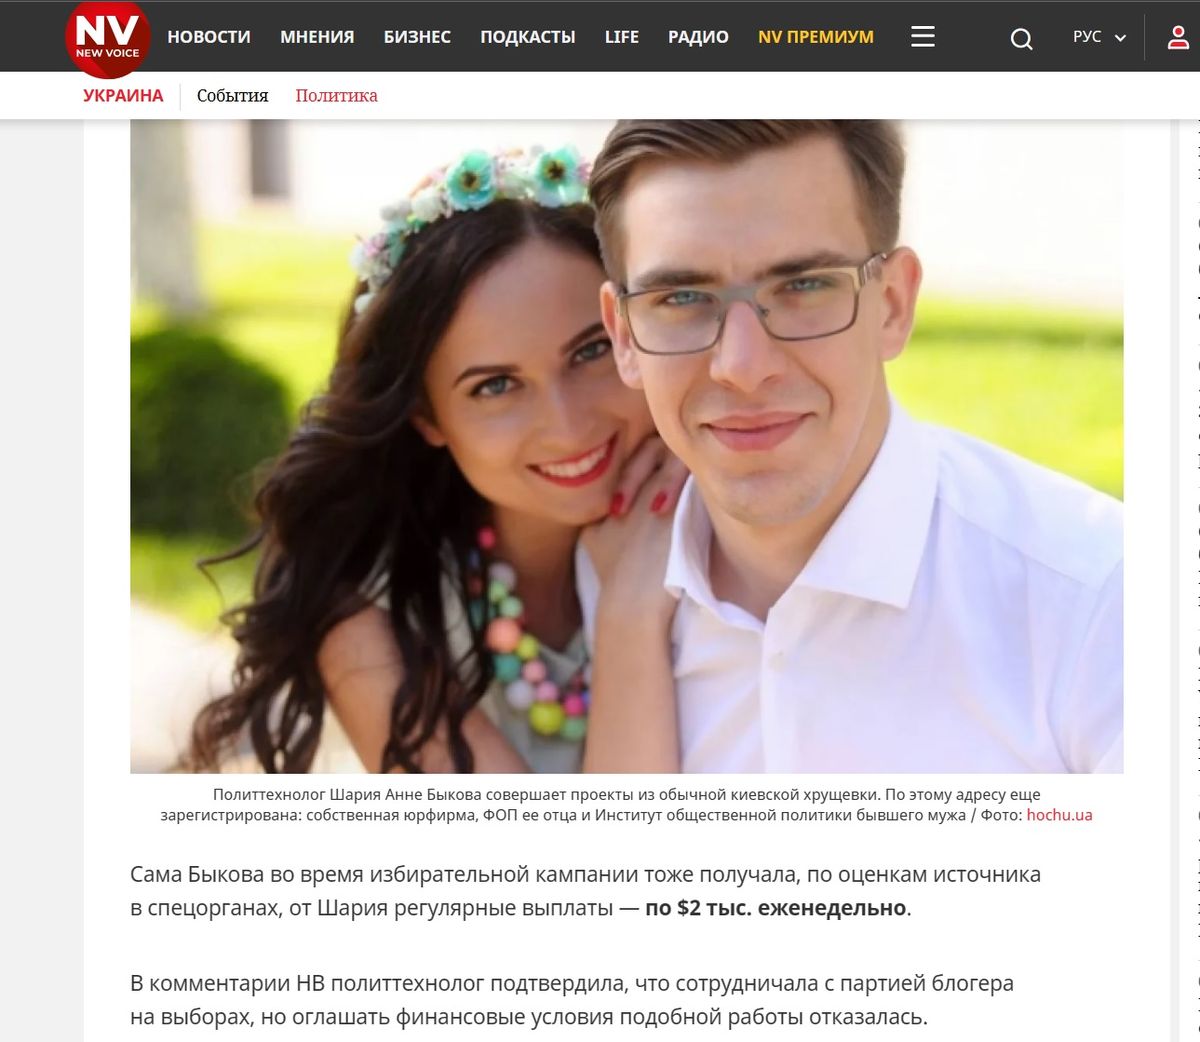 Расследование Bihus.info о платных услугах политтехнологов в пользу пророссийских сил в Украине, опубликованное одним из наиболее авторитетных украинских изданий New Voice